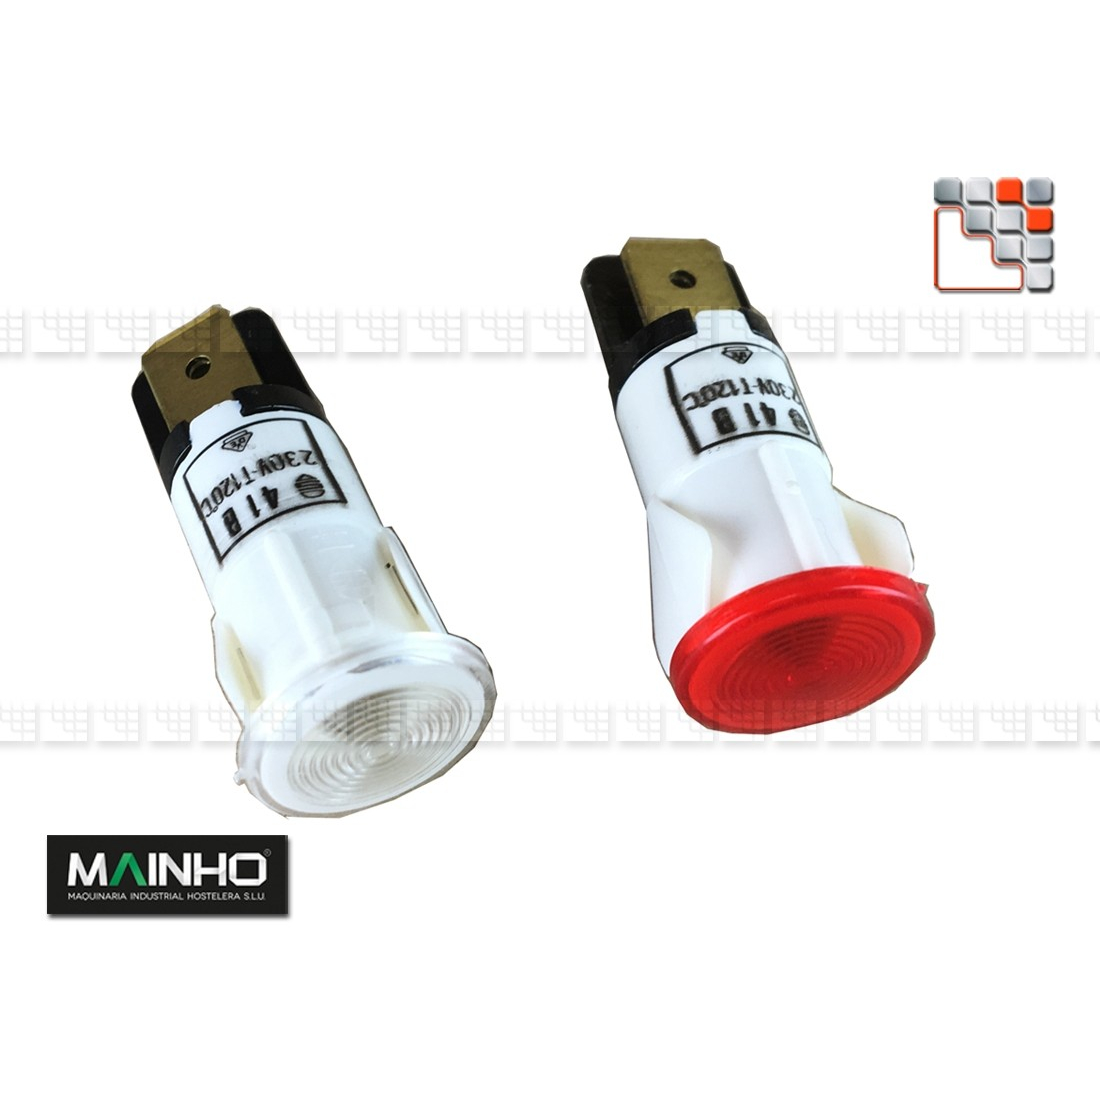 Indicator light 230V MAINHO M36-12F63 MAINHO SAV - Accessoires Spare parts Electrical MAINHO